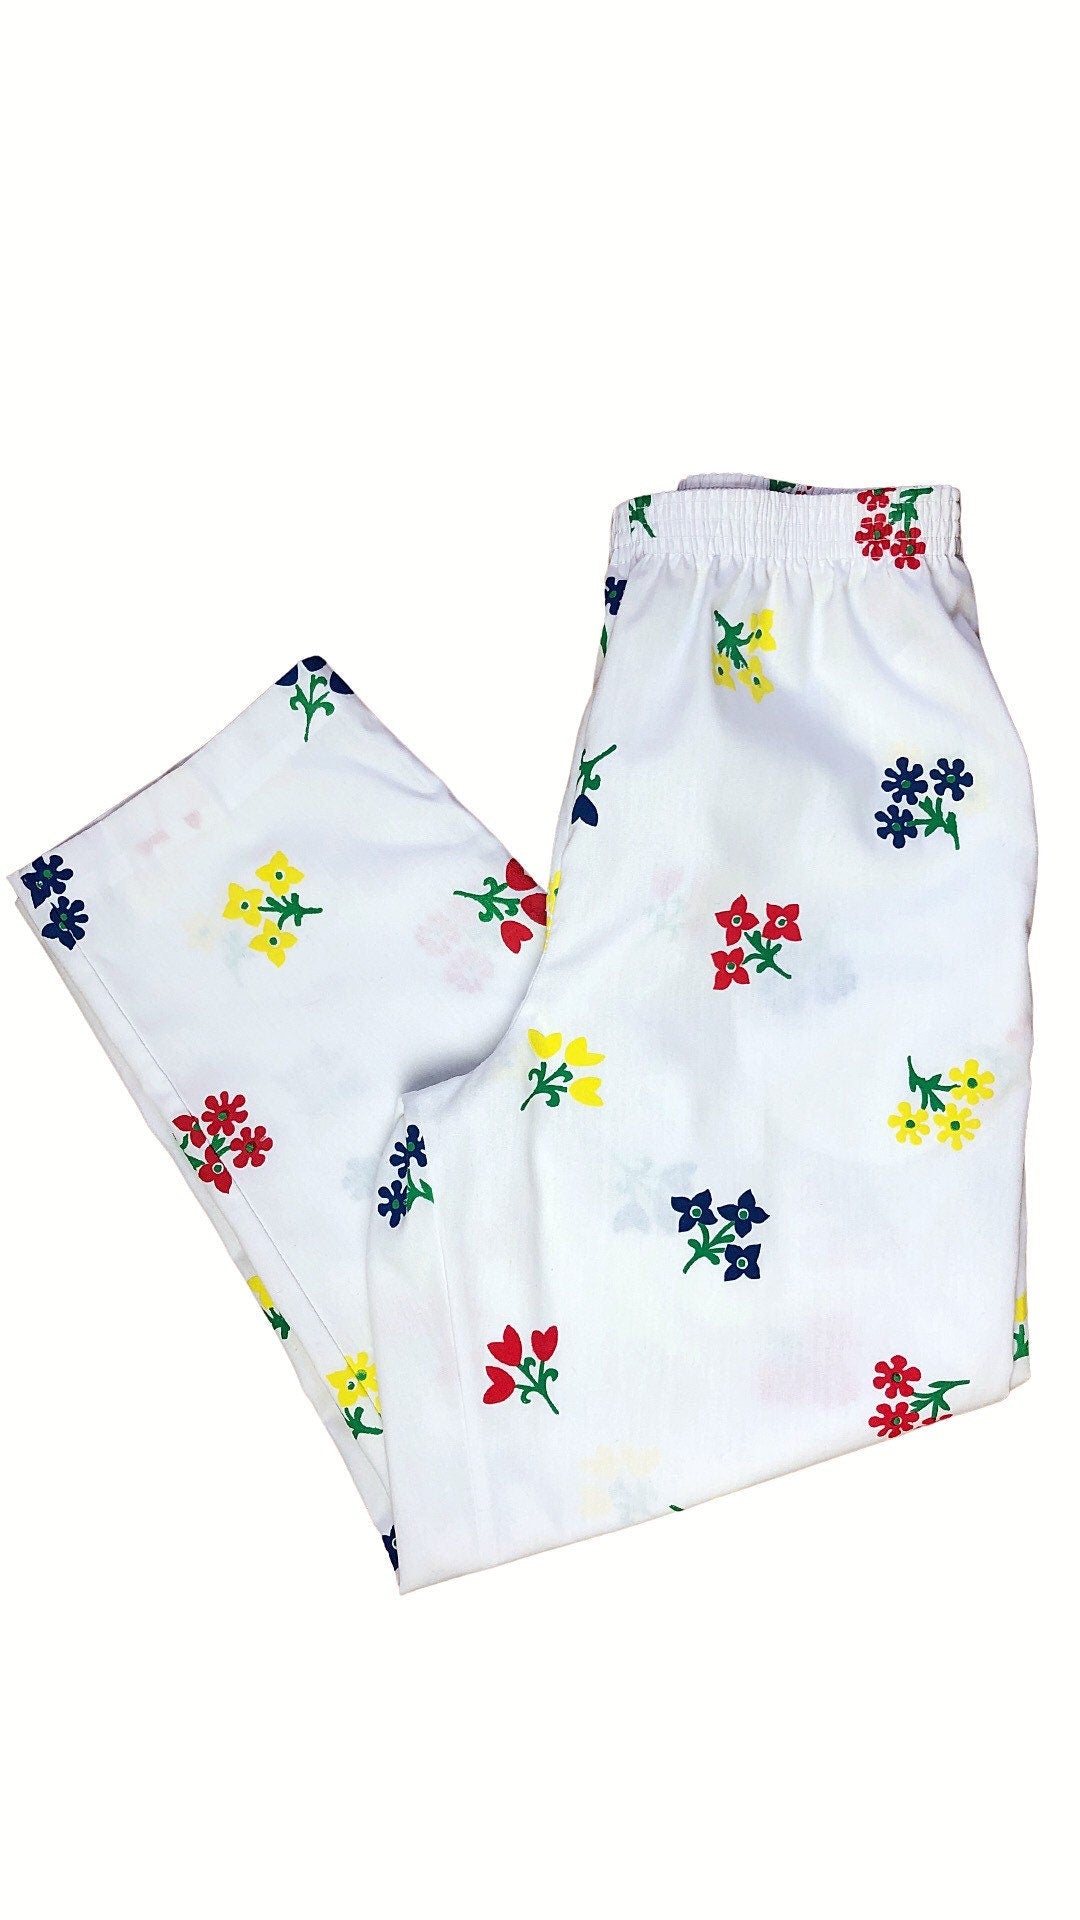 90’s White Rainbow Bouquet Floral Crisp Cotton Ankle Pants with Pockets Size Medium